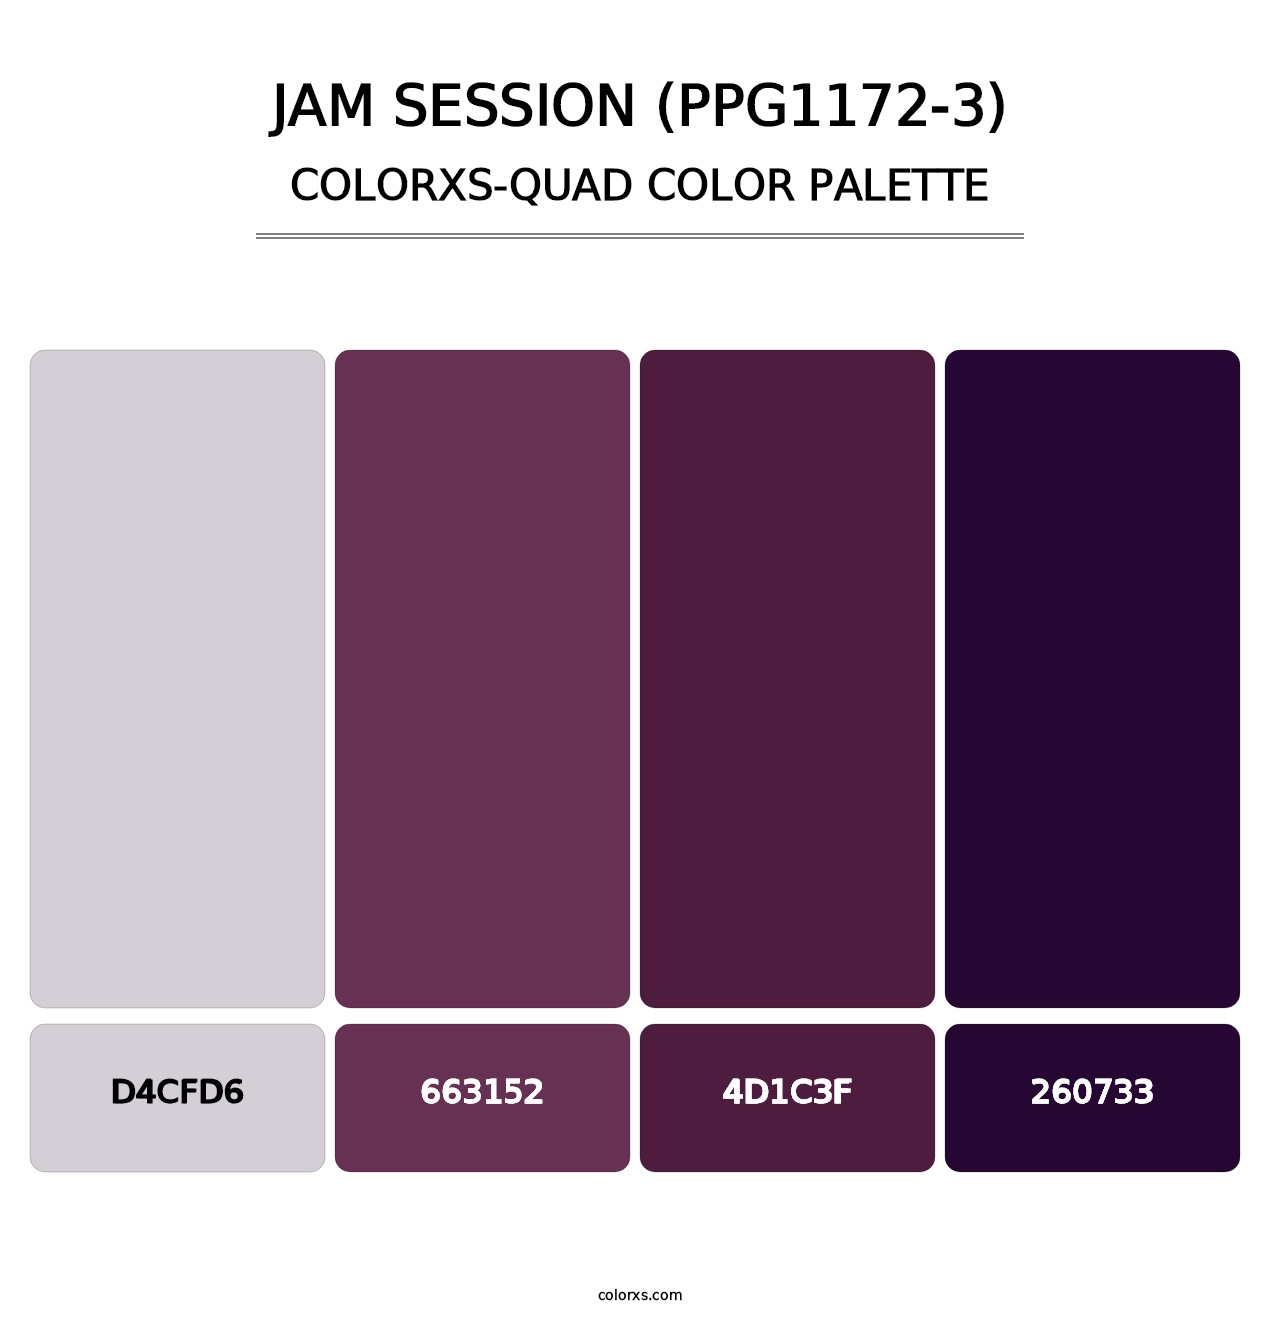 Jam Session (PPG1172-3) - Colorxs Quad Palette